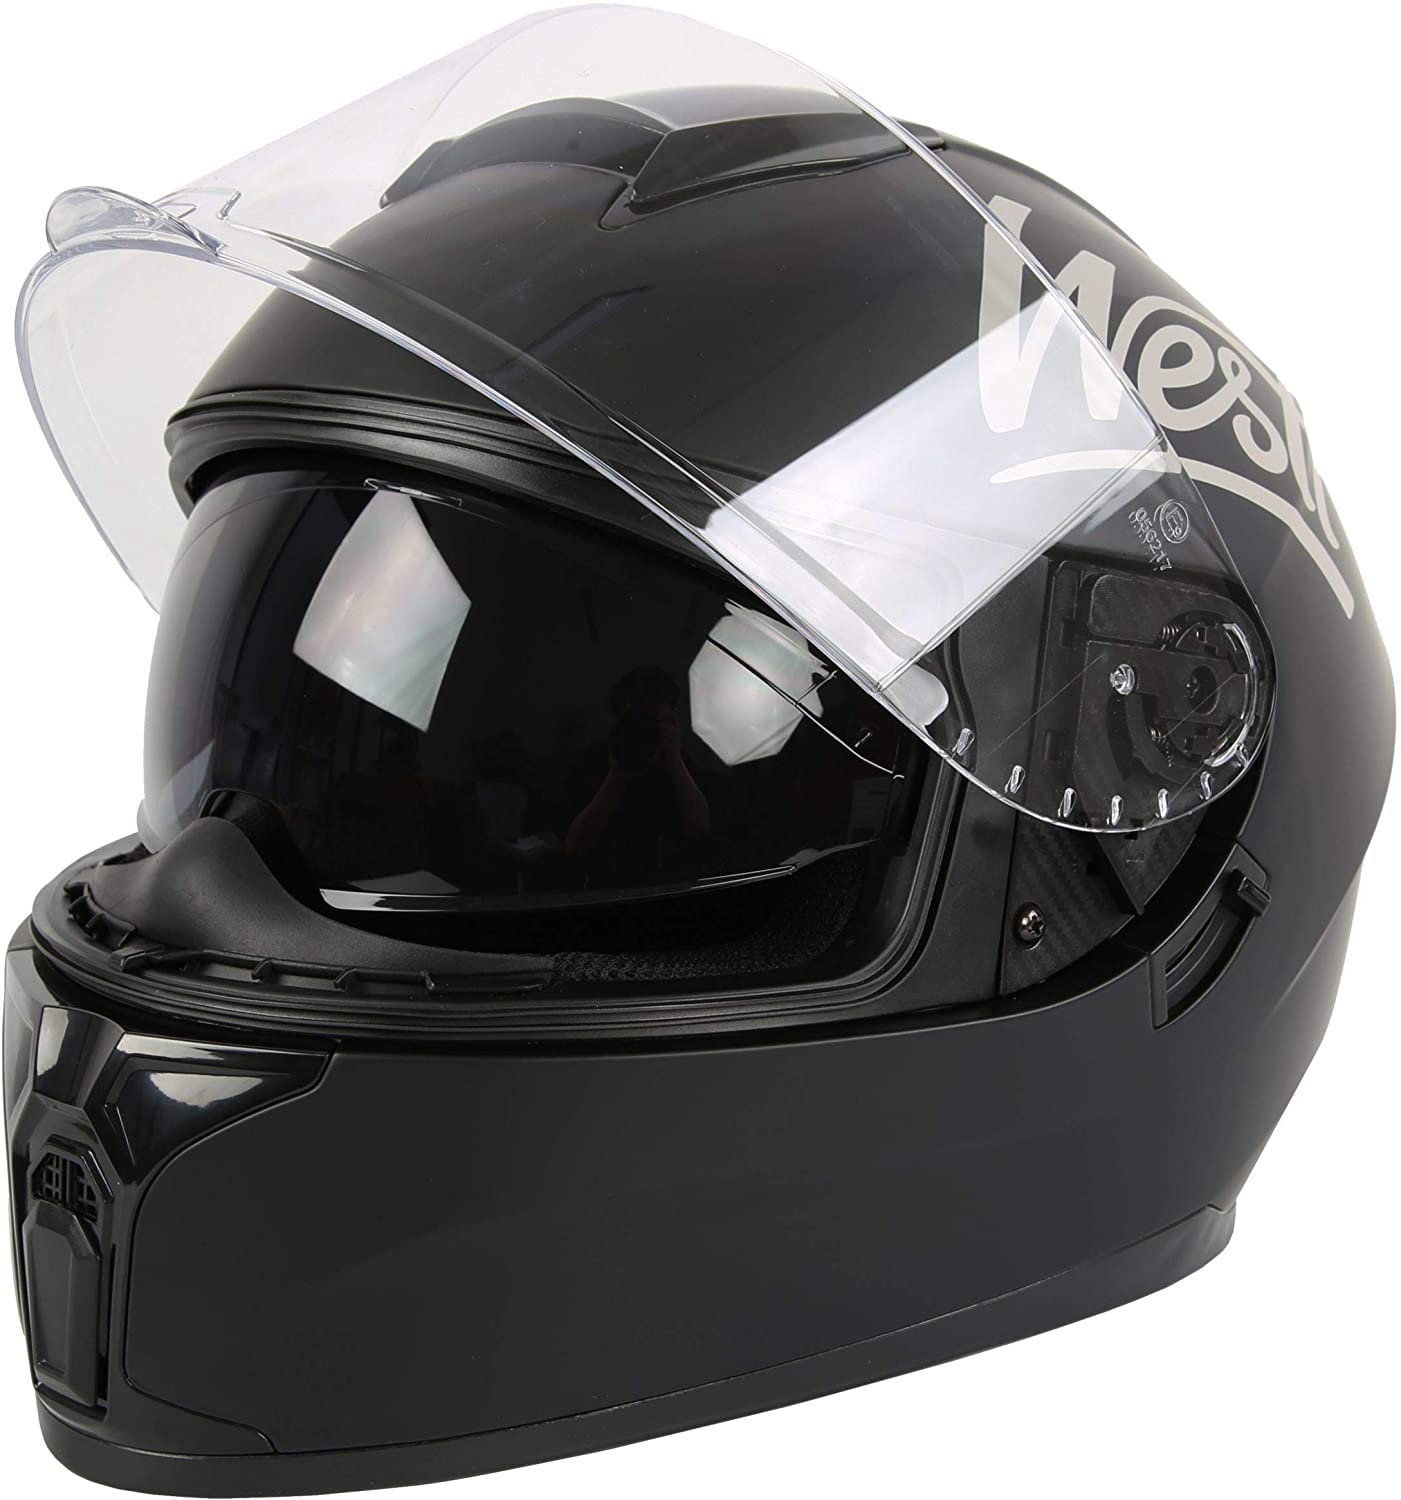 top motorcycle 10 9 brands helmets